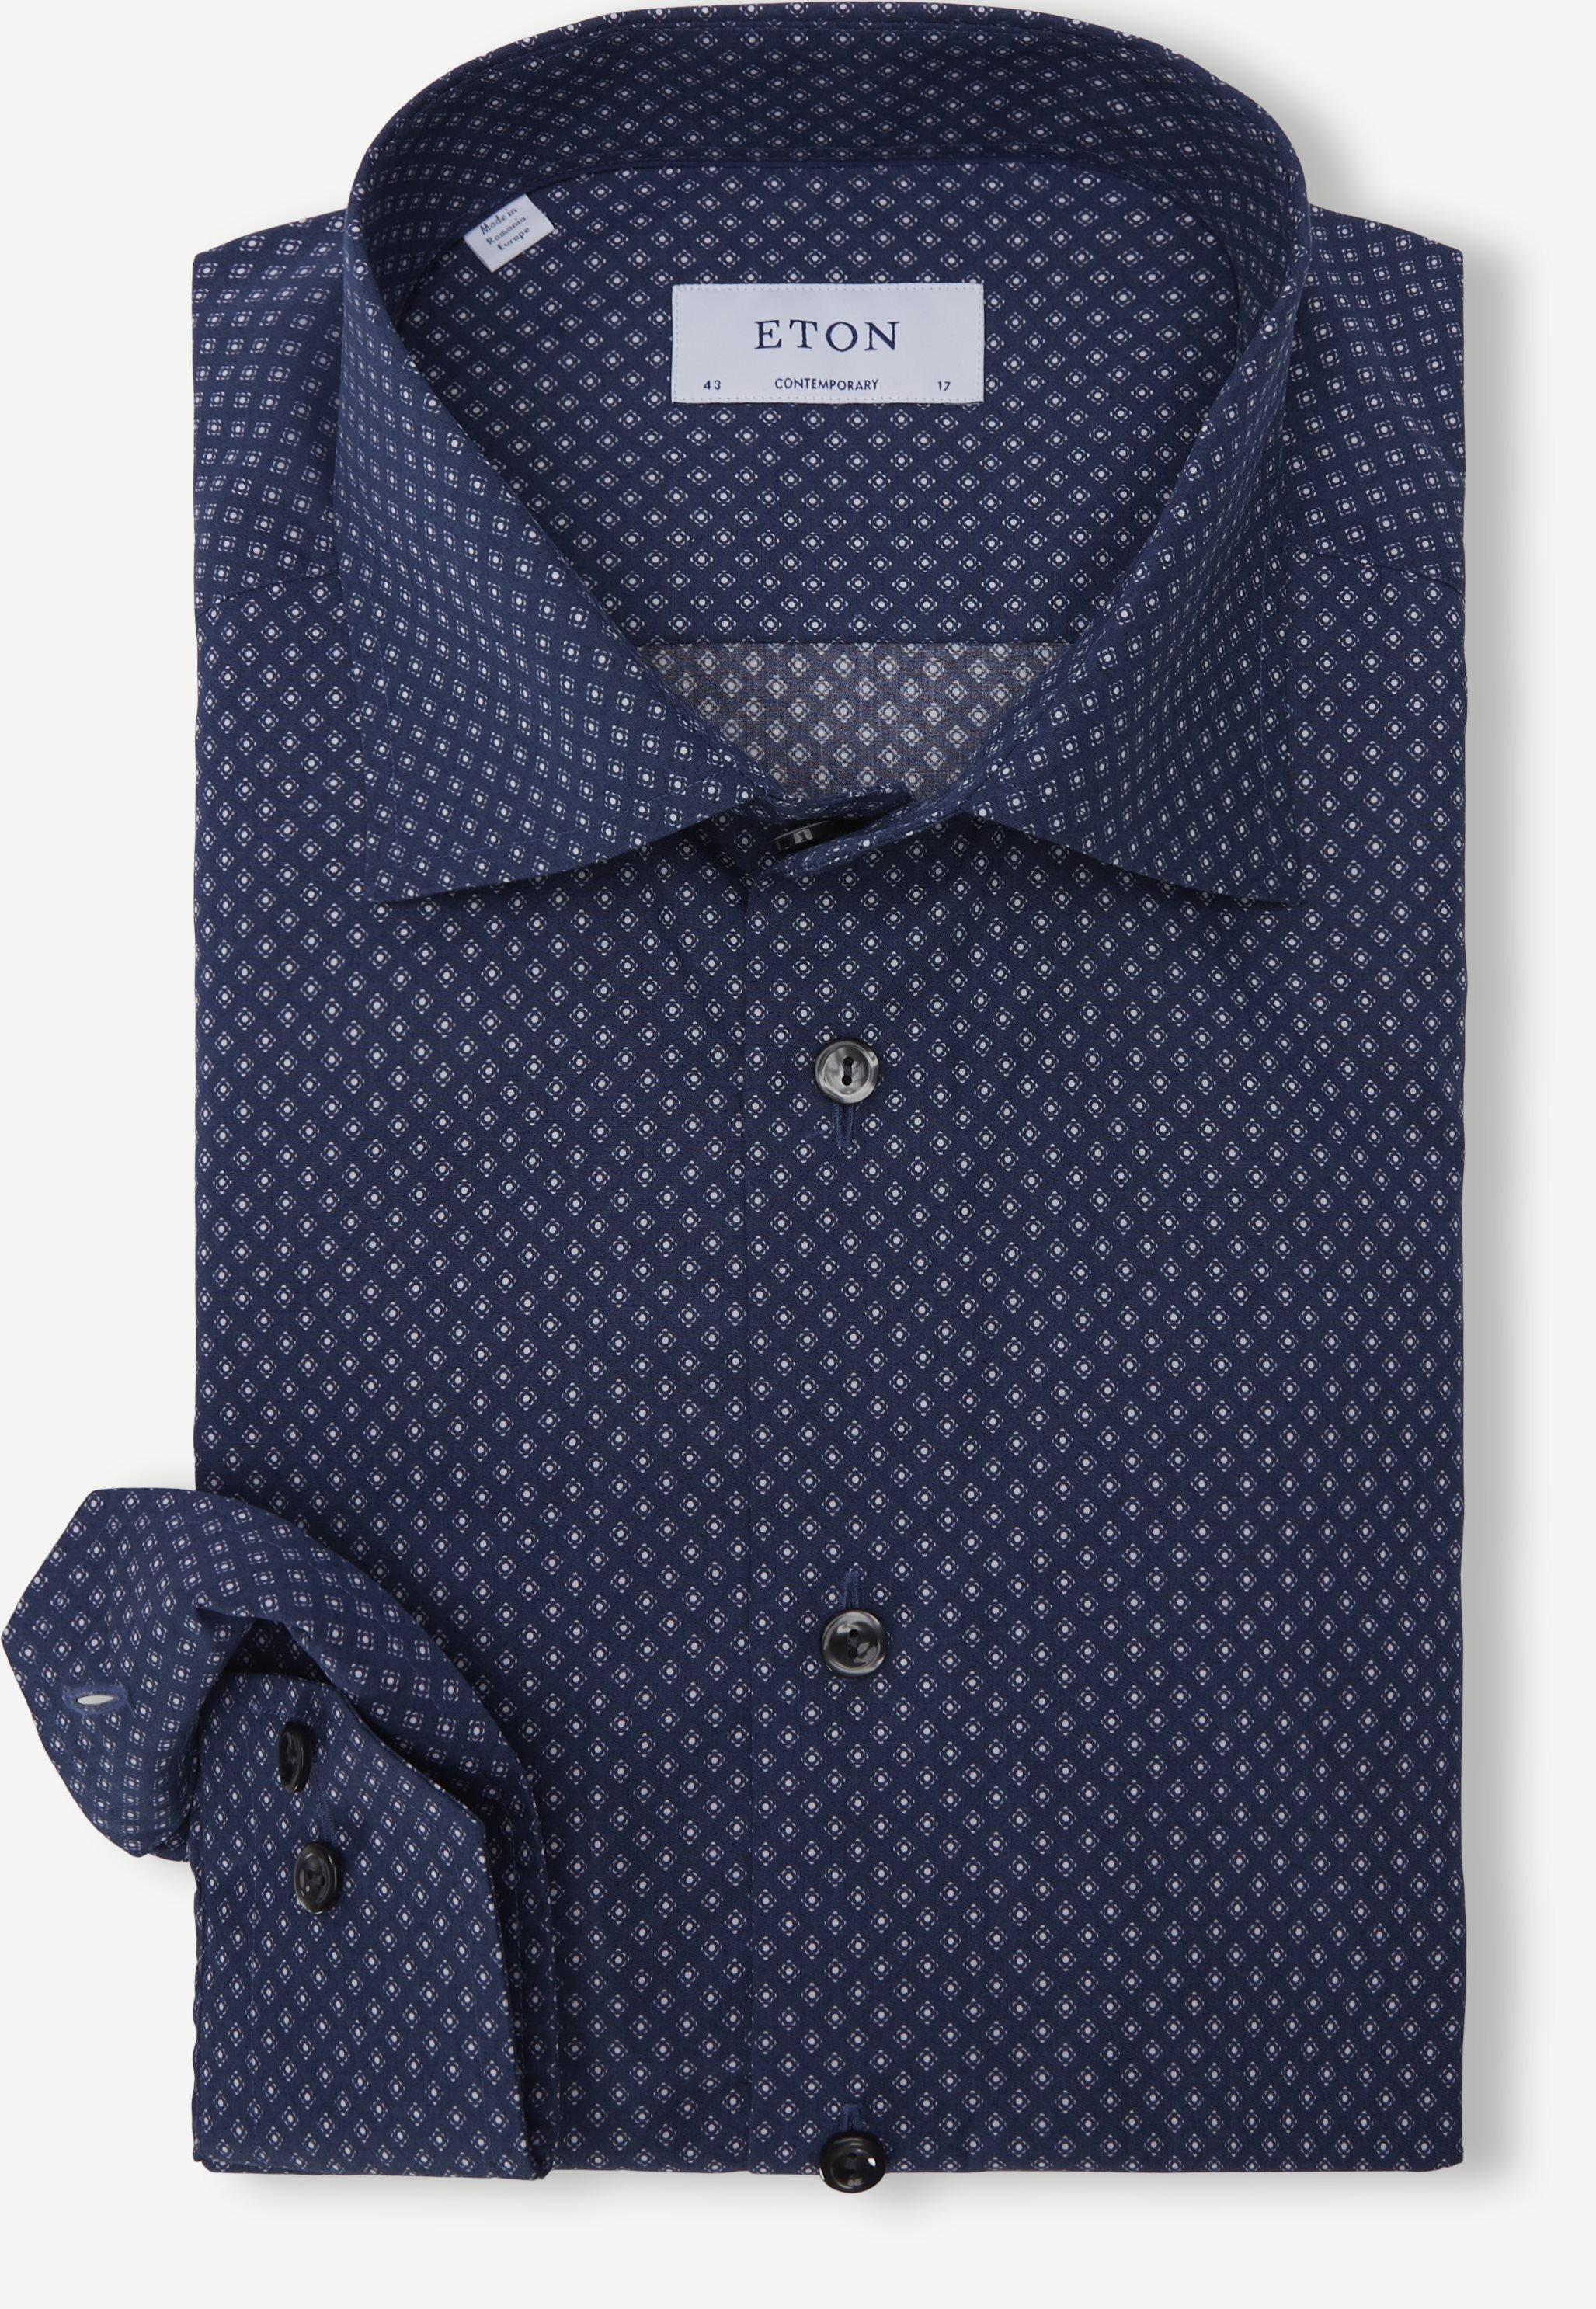 2132 Poplin Shirt - Skjorter - Contemporary fit - Blå